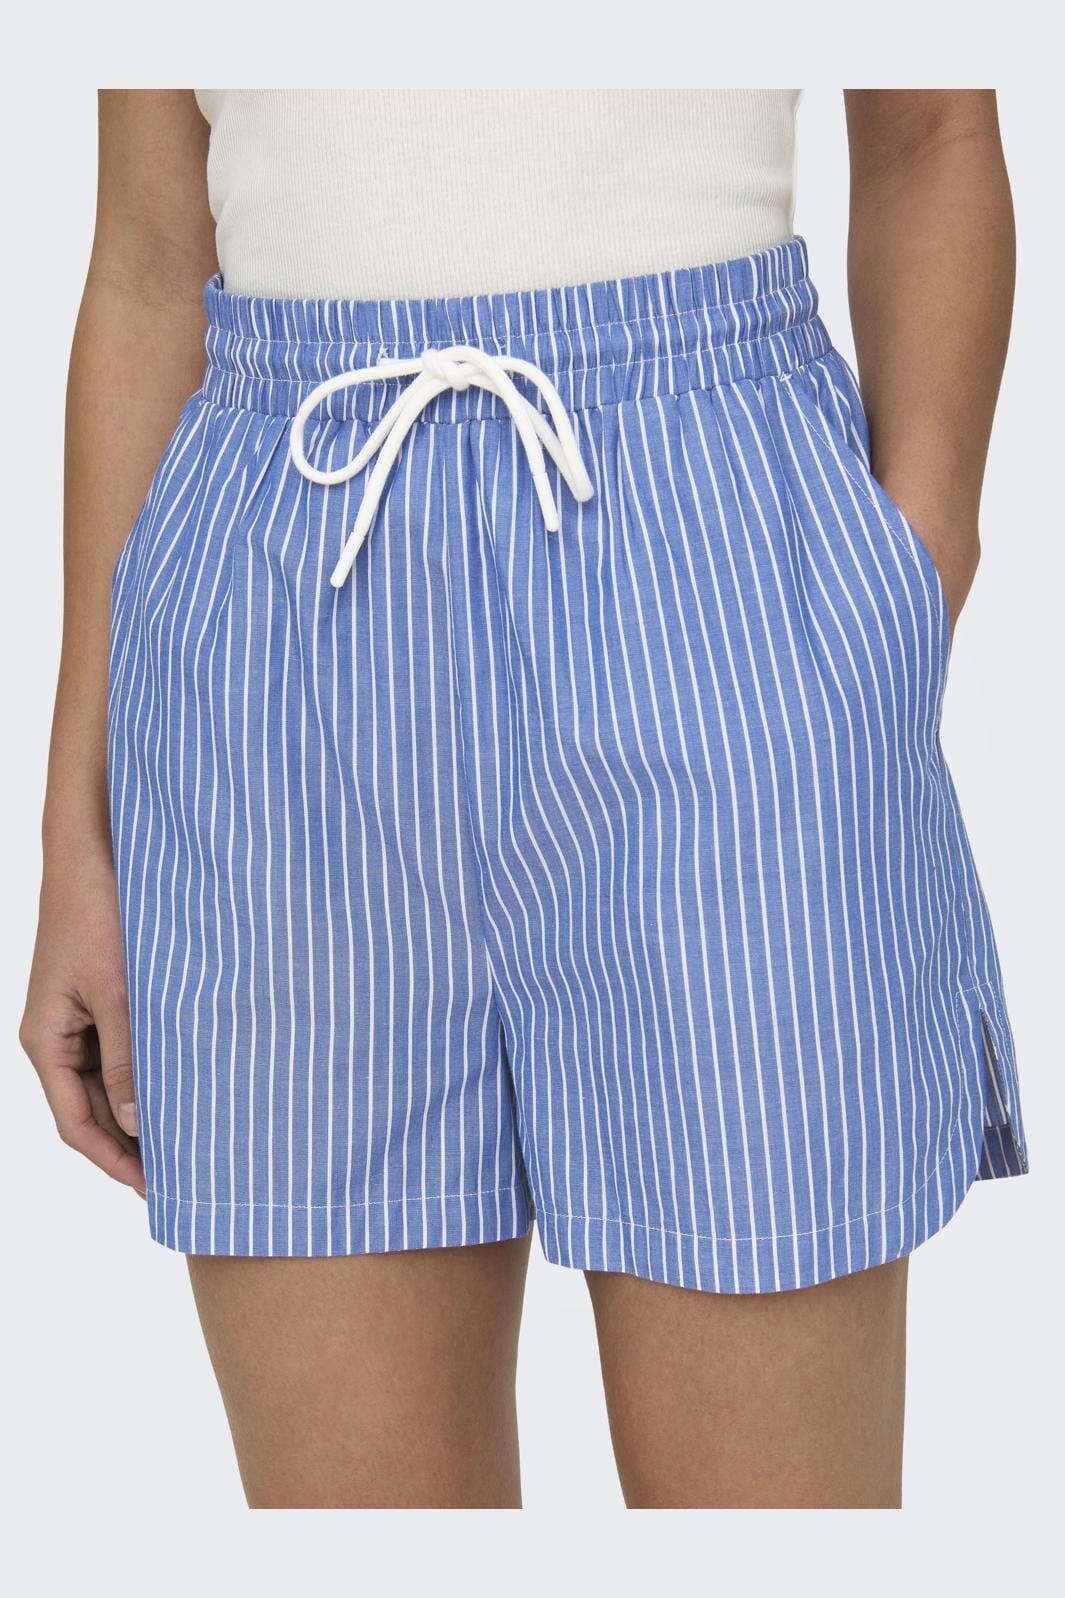 Only - Onlarja Stripe Shorts - 4018608 Infinity Cd Stripes